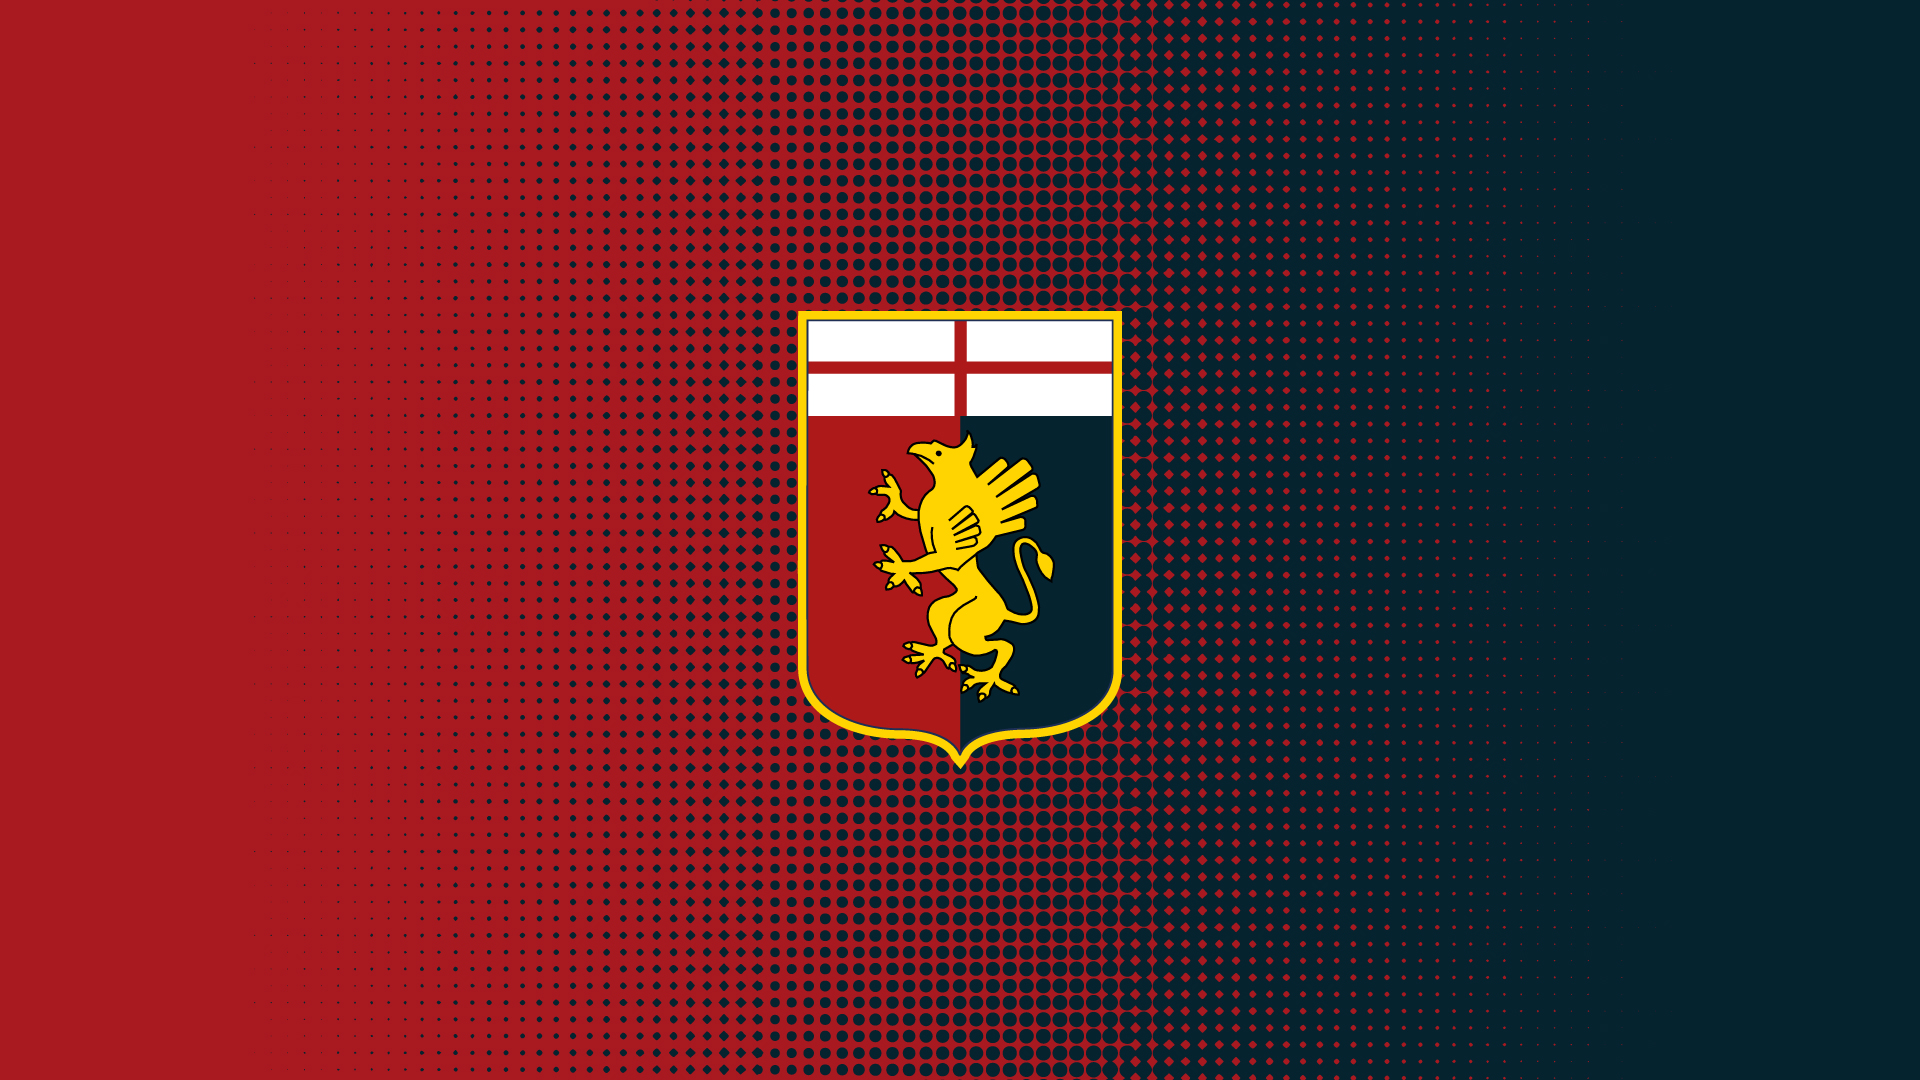 Izzo Lopez Inter-Genoa-Carpi Preziosi Logo Genoa Cagia FIGC Grifone